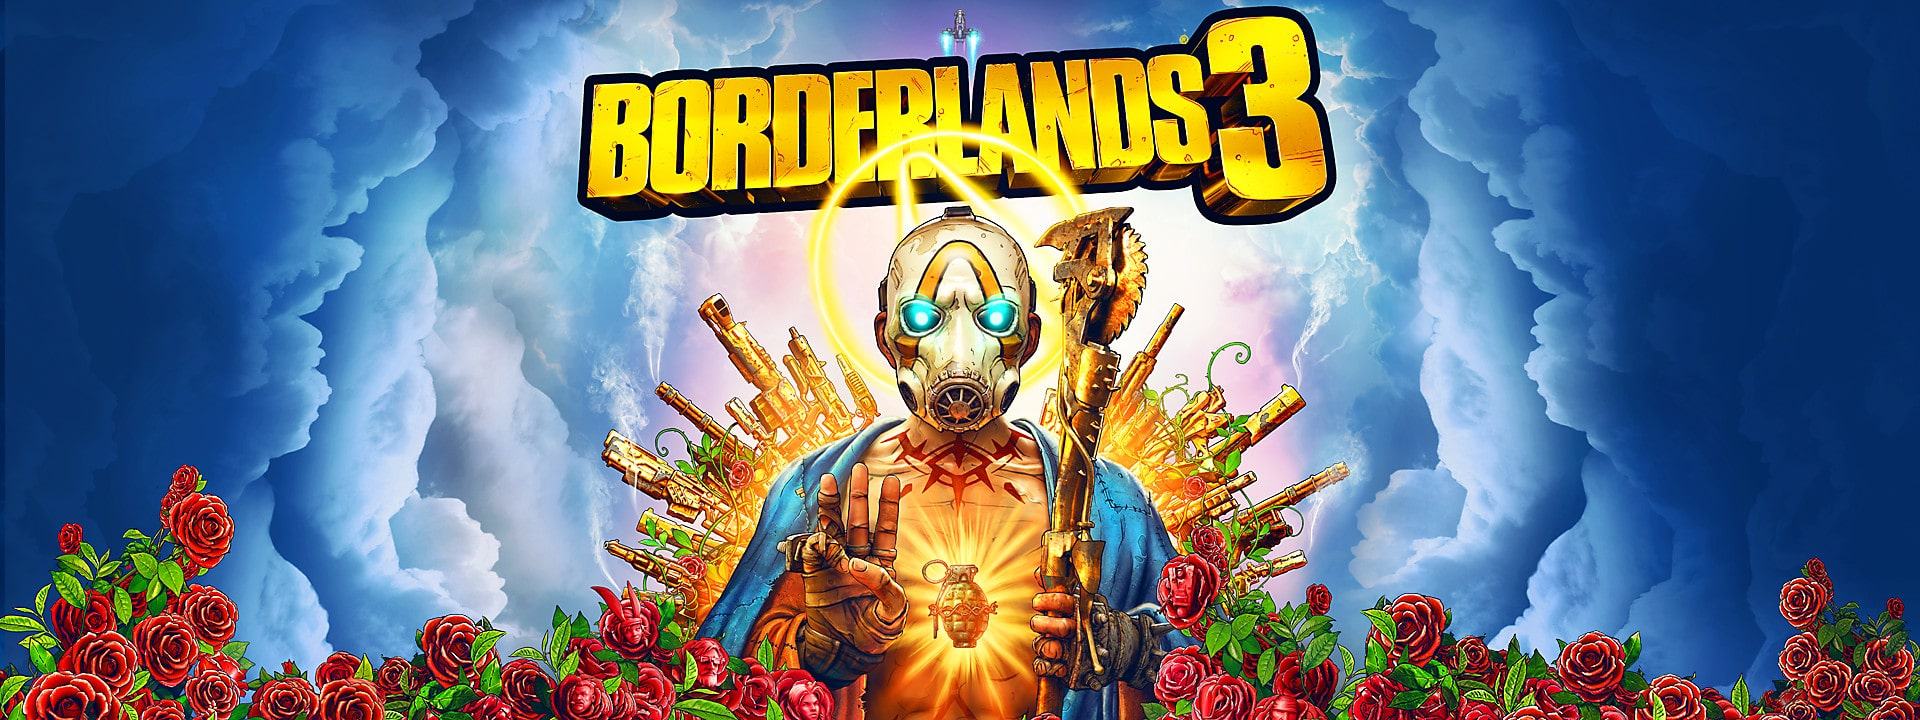 Borderlands 3: continuano i bonus per celebrare il decimo anniversario della saga 2